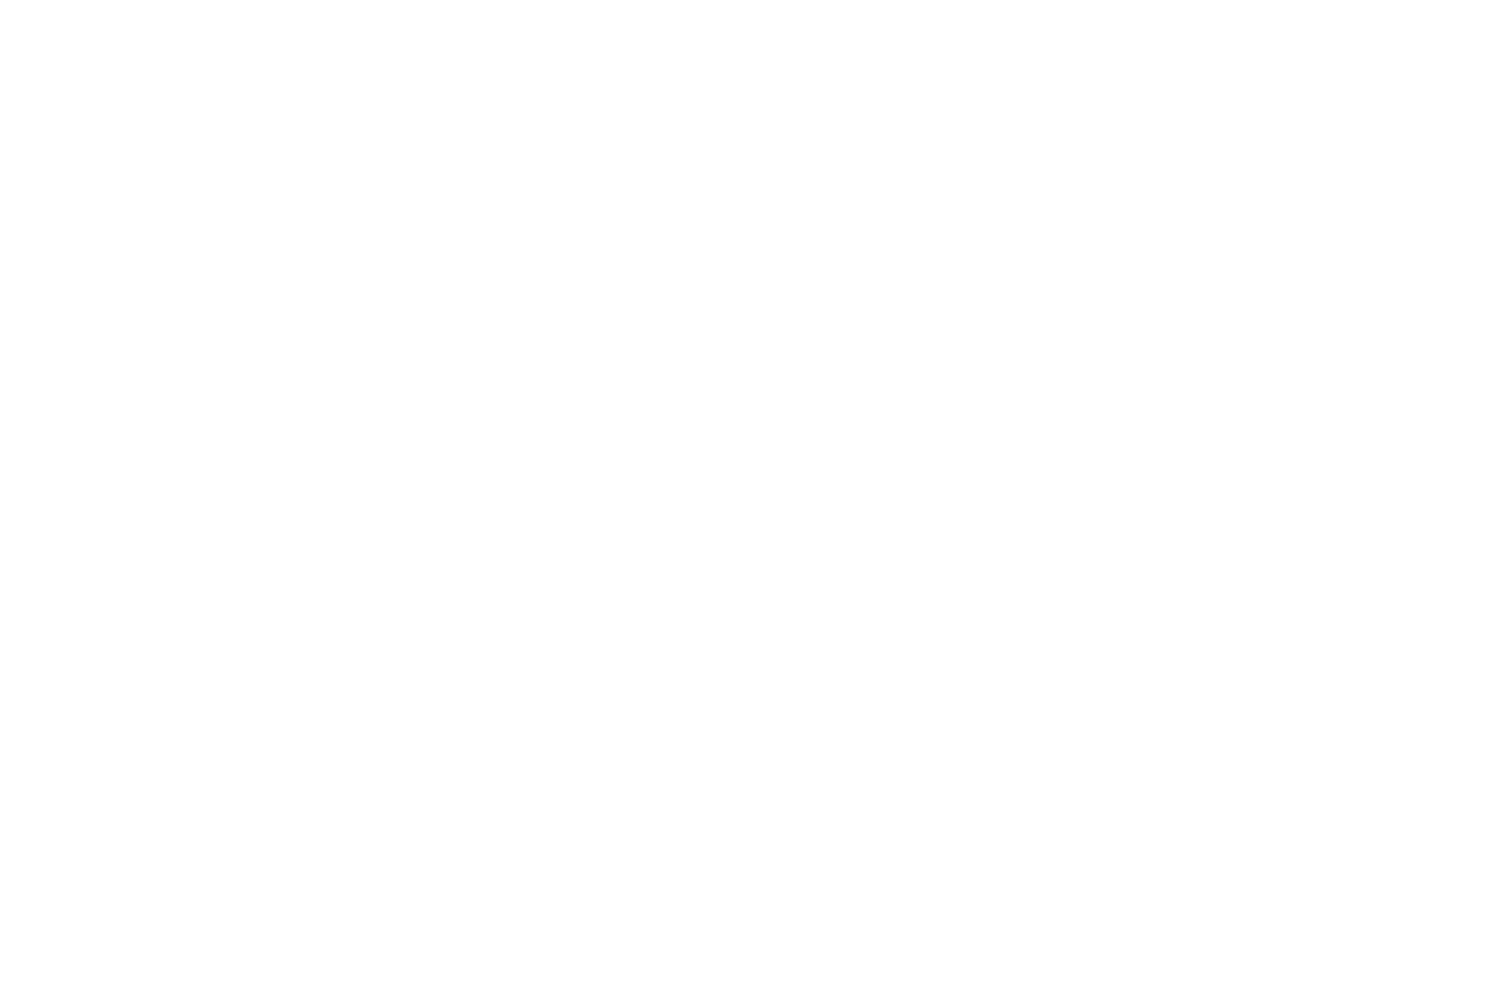 Wylde Soul Photography